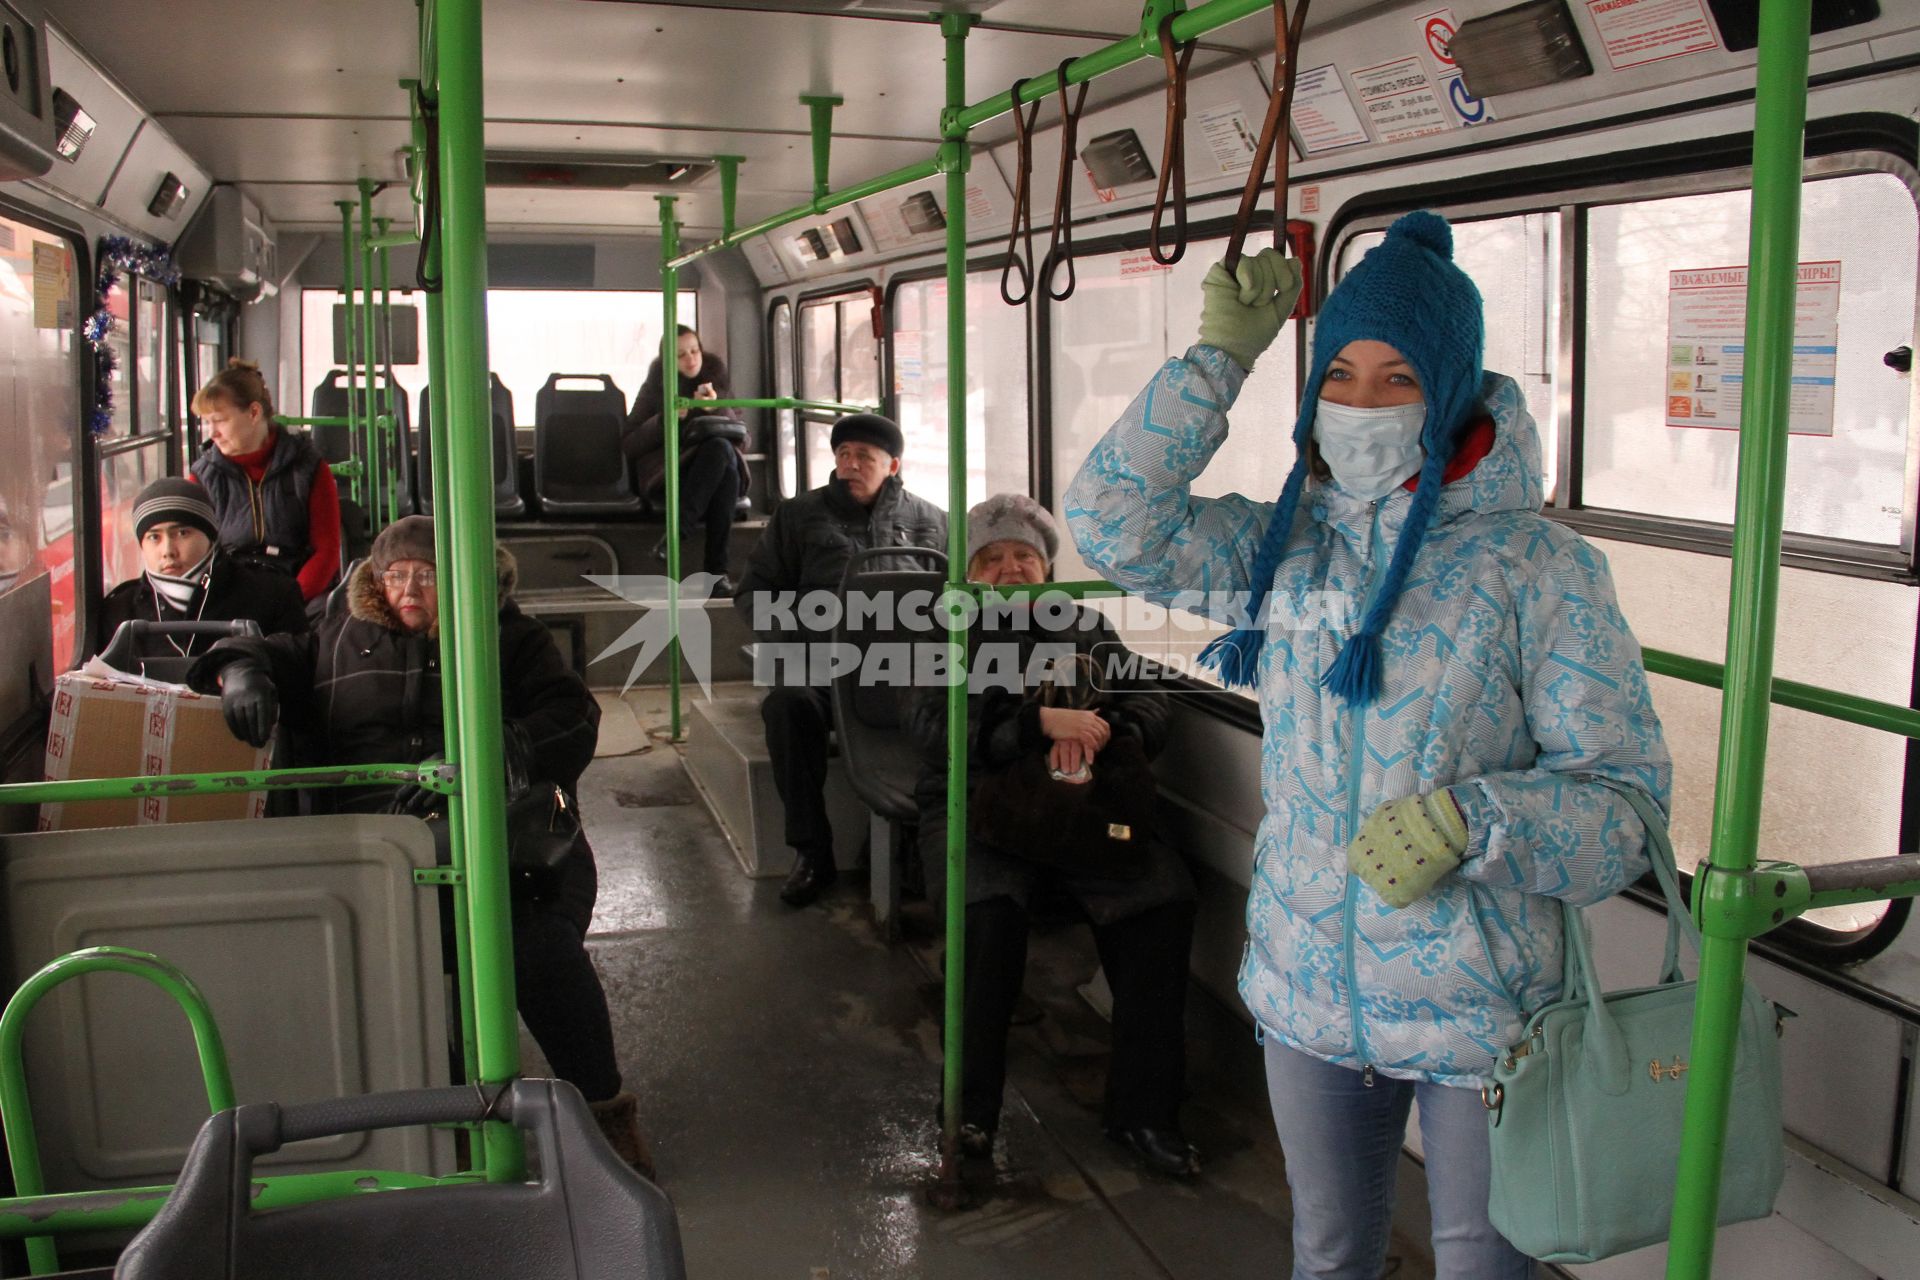 Нижний Новгород. Девушка в медицинской маске едет в автобусе.